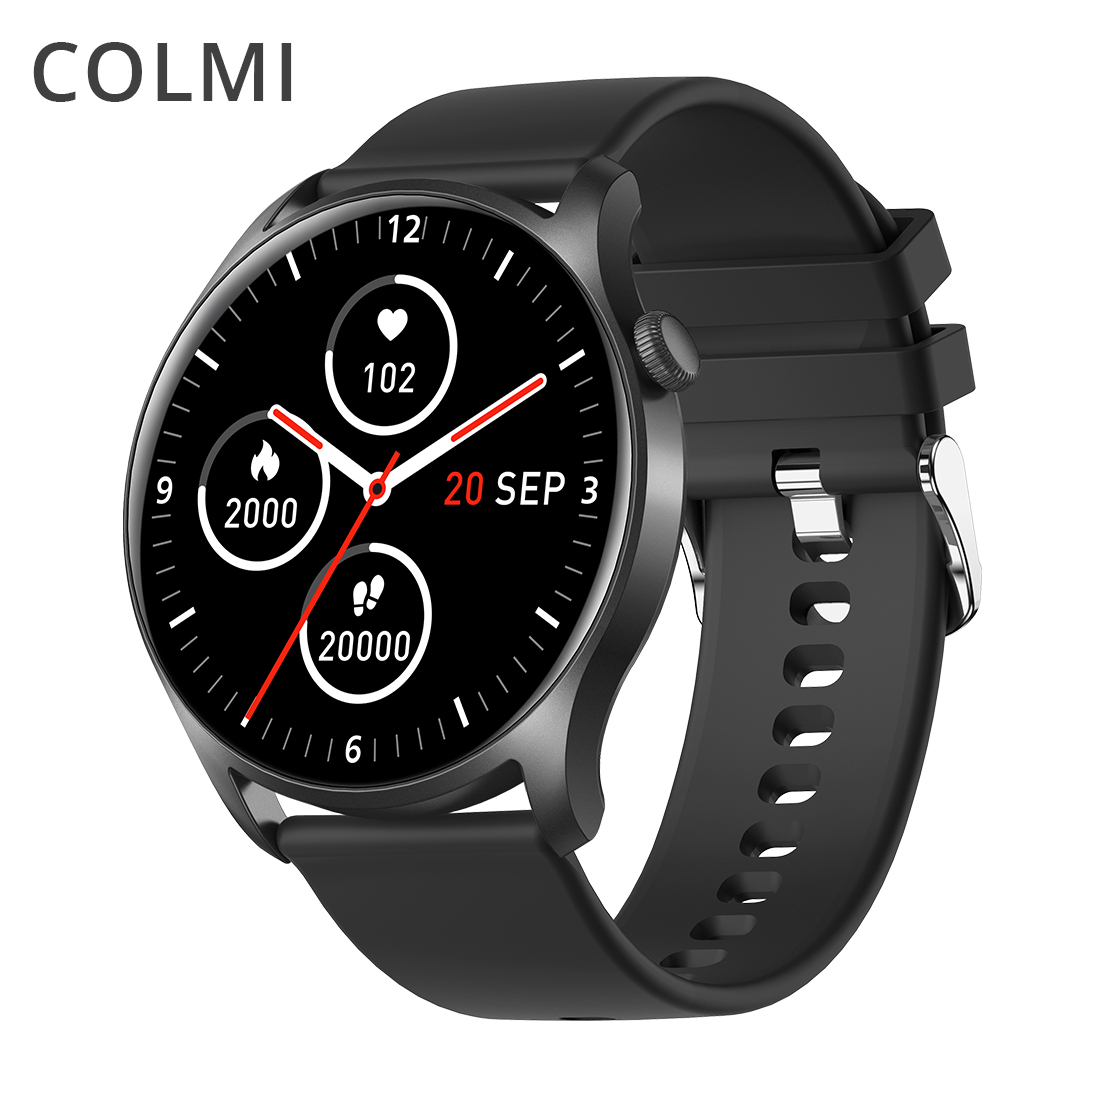 COLMI SKY 8 Smart Watch Haweenka IP67 Biyaha aan Biyaha lahayn ee Bluetooth-ka Smartwatch Ragga ee Android i ( (4)